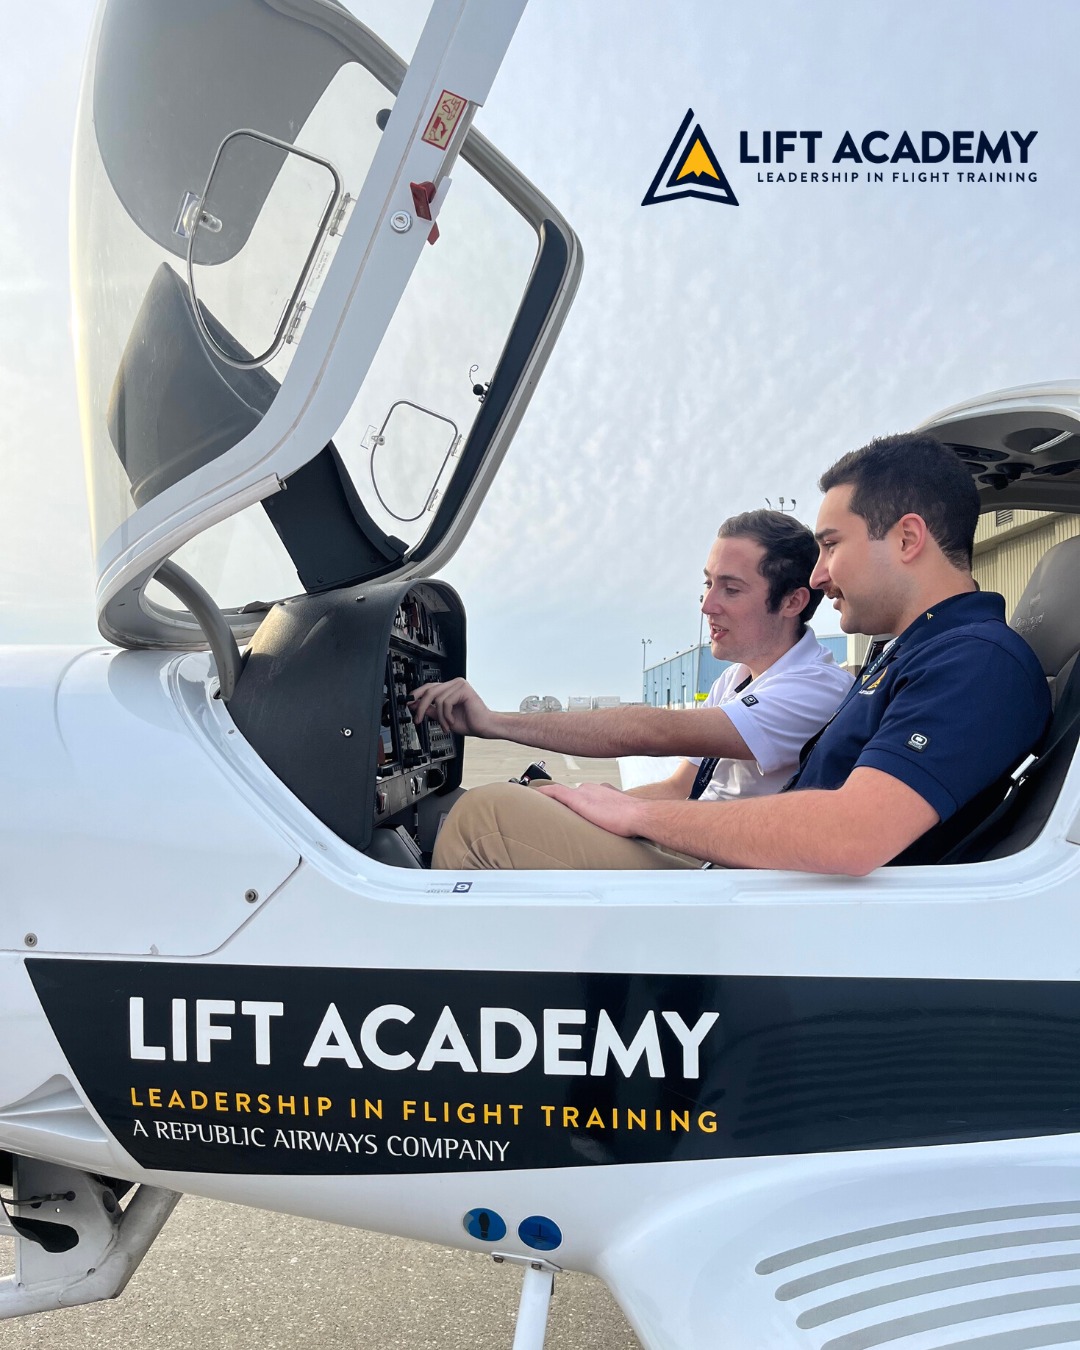 Leadership in Flight Training (“LIFT”) Academy Aviation Center ...